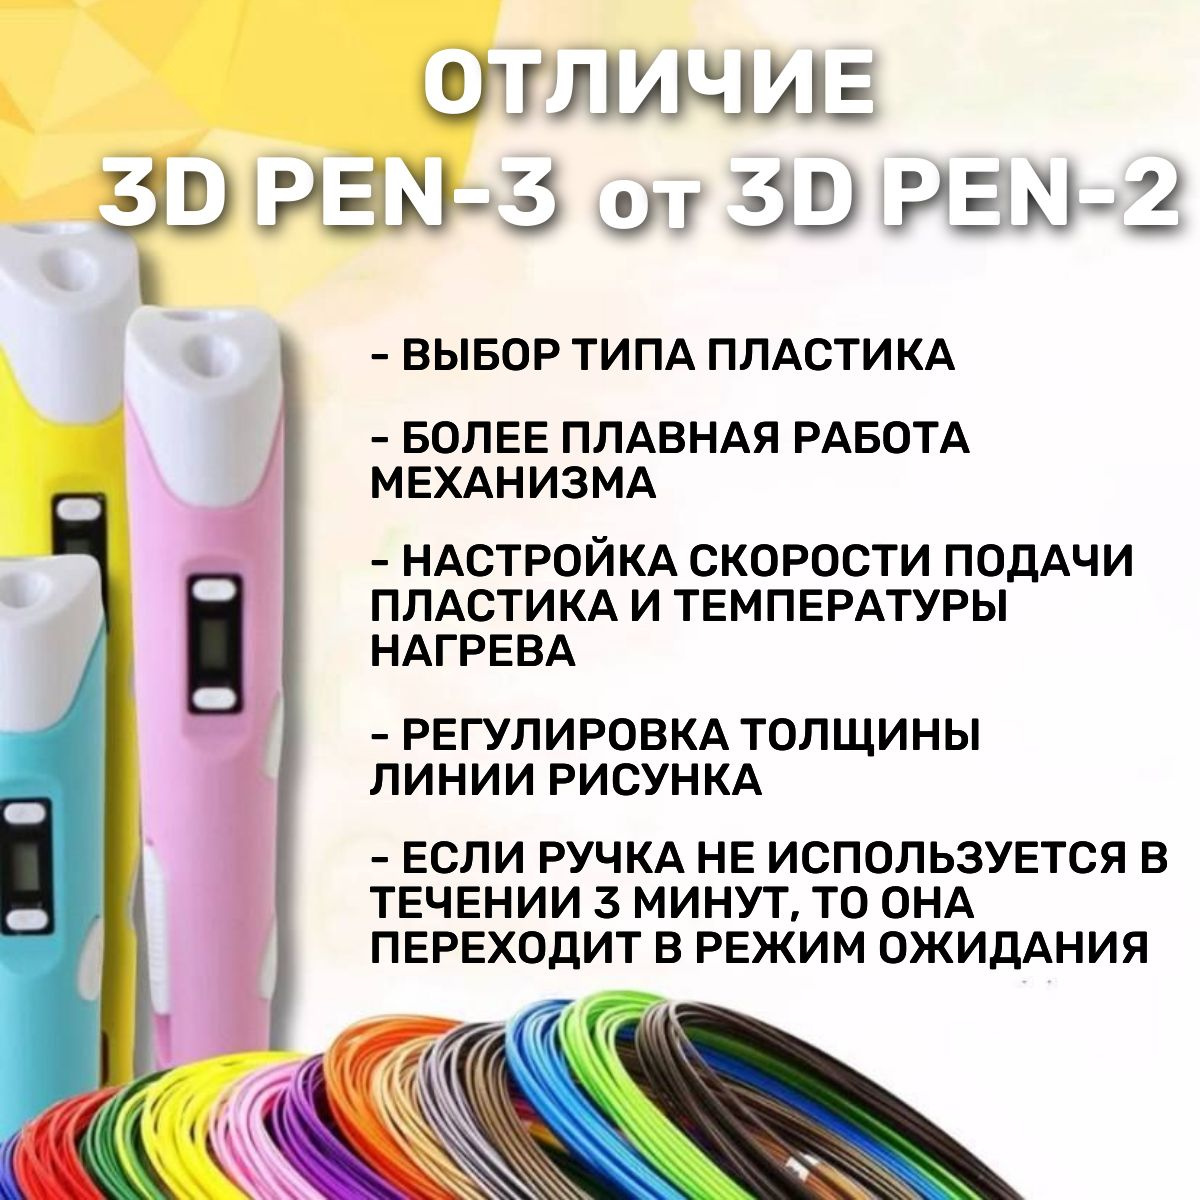 Эти 3d-ручки оснащены новым более мощным двигателем, что позволяет использовать пластики более широкого спектра производителей, чем предыдущая версия 3d-ручки.